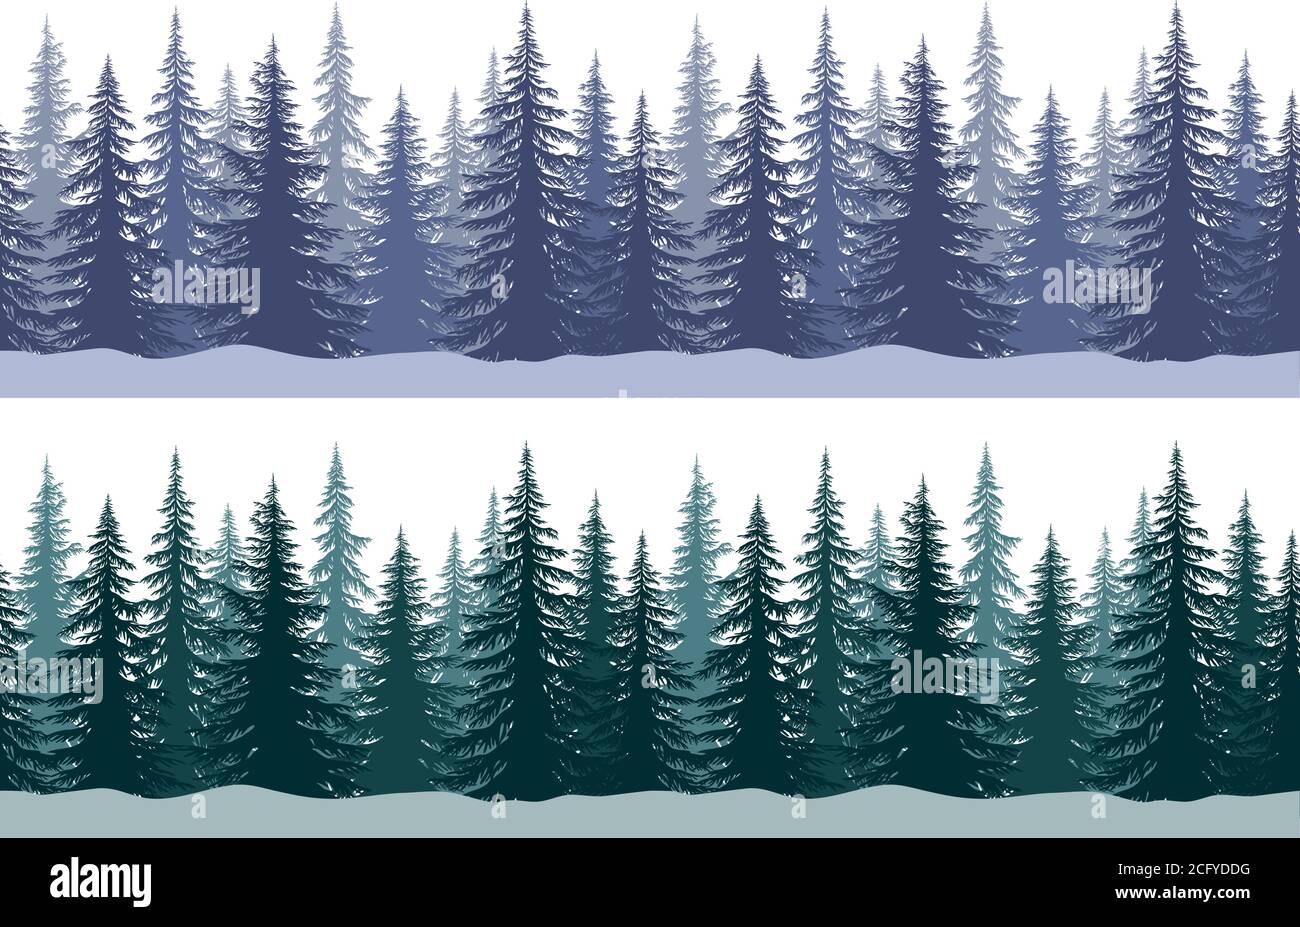 Nahtlose horizontale Winterlandschaften mit Weihnachten Nadelbäume und Schneeflocken, Fliesen Urlaub Hintergrund. Vektor Stock Vektor